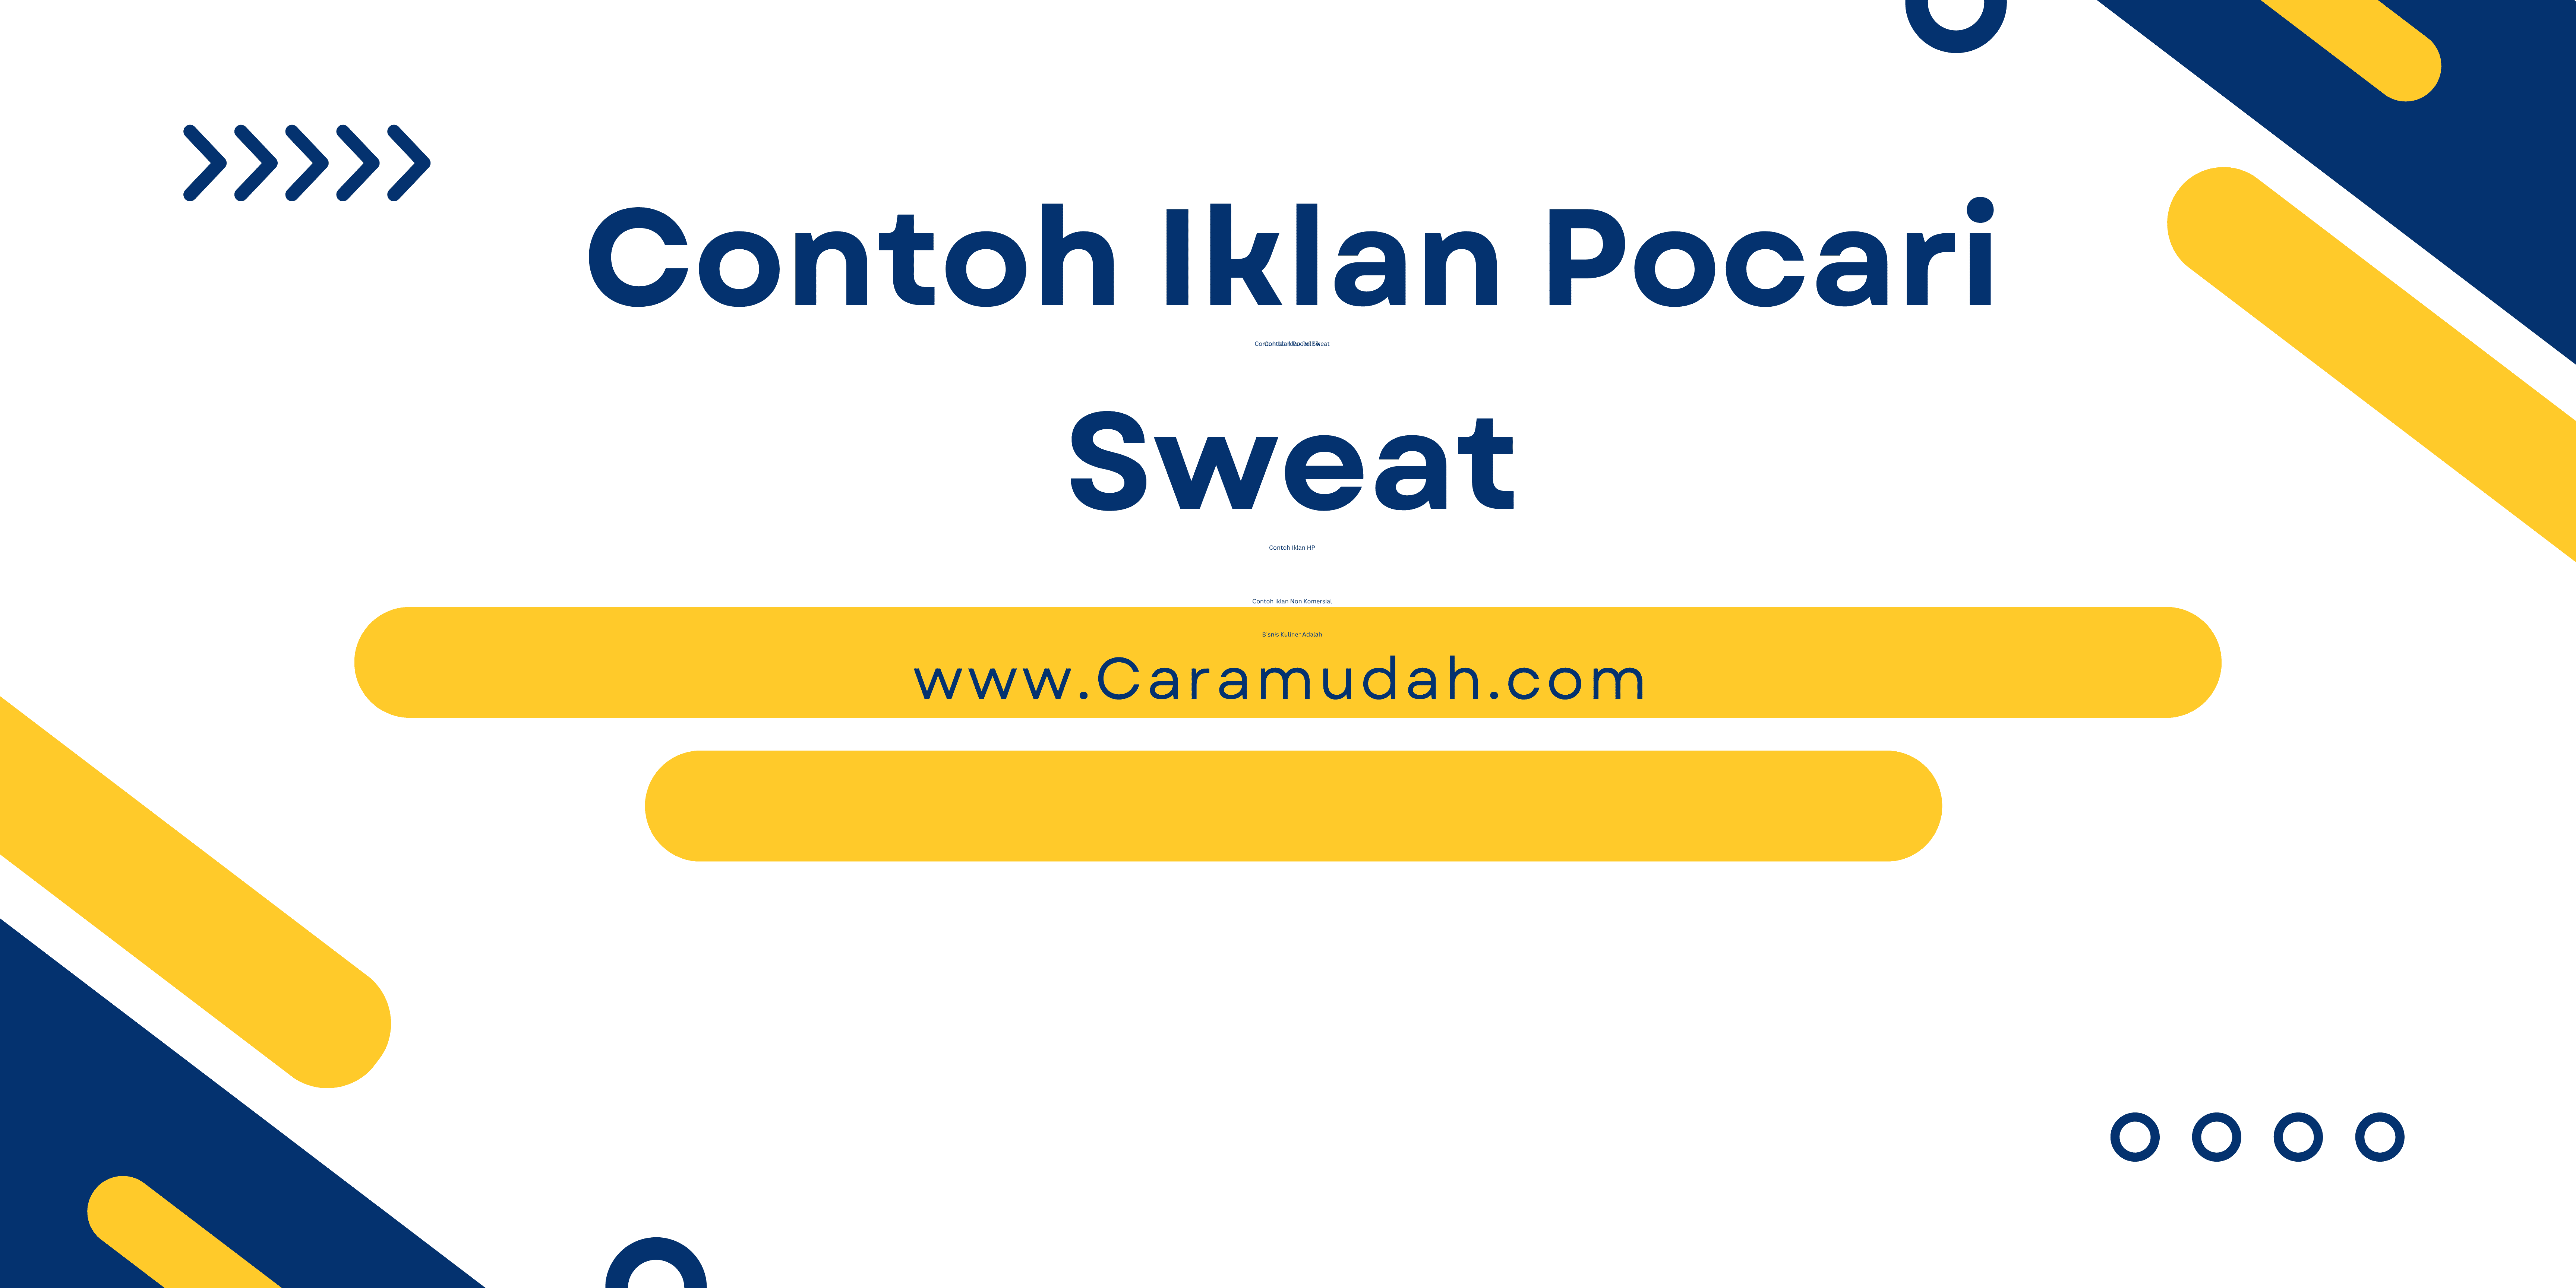 Contoh Iklan Pocari Sweat